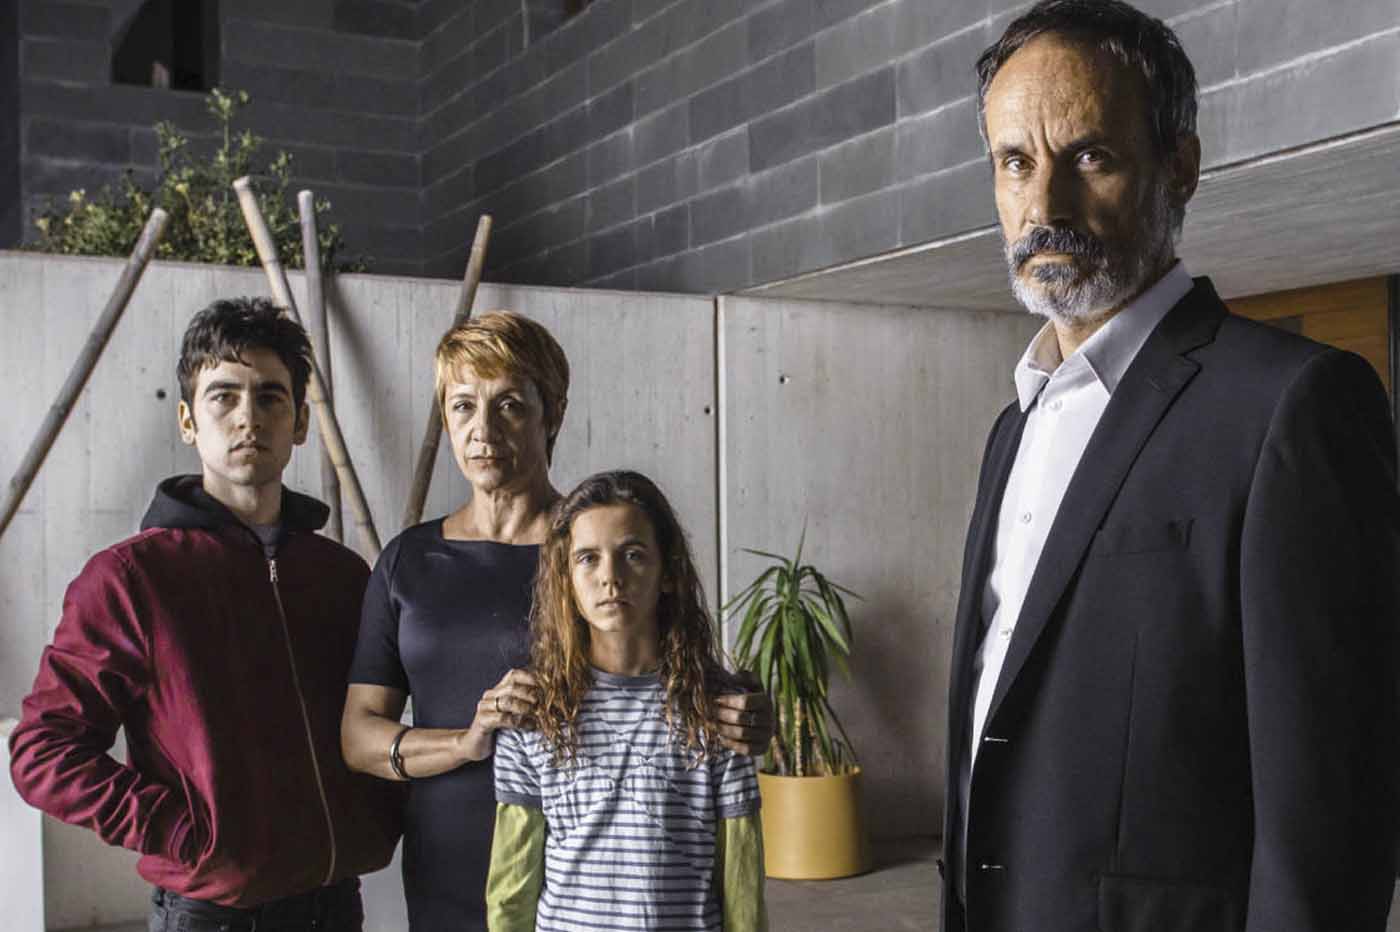 Serie tv Io so chi sei su Mediaset Infinity: trama, cast e uscita in streaming